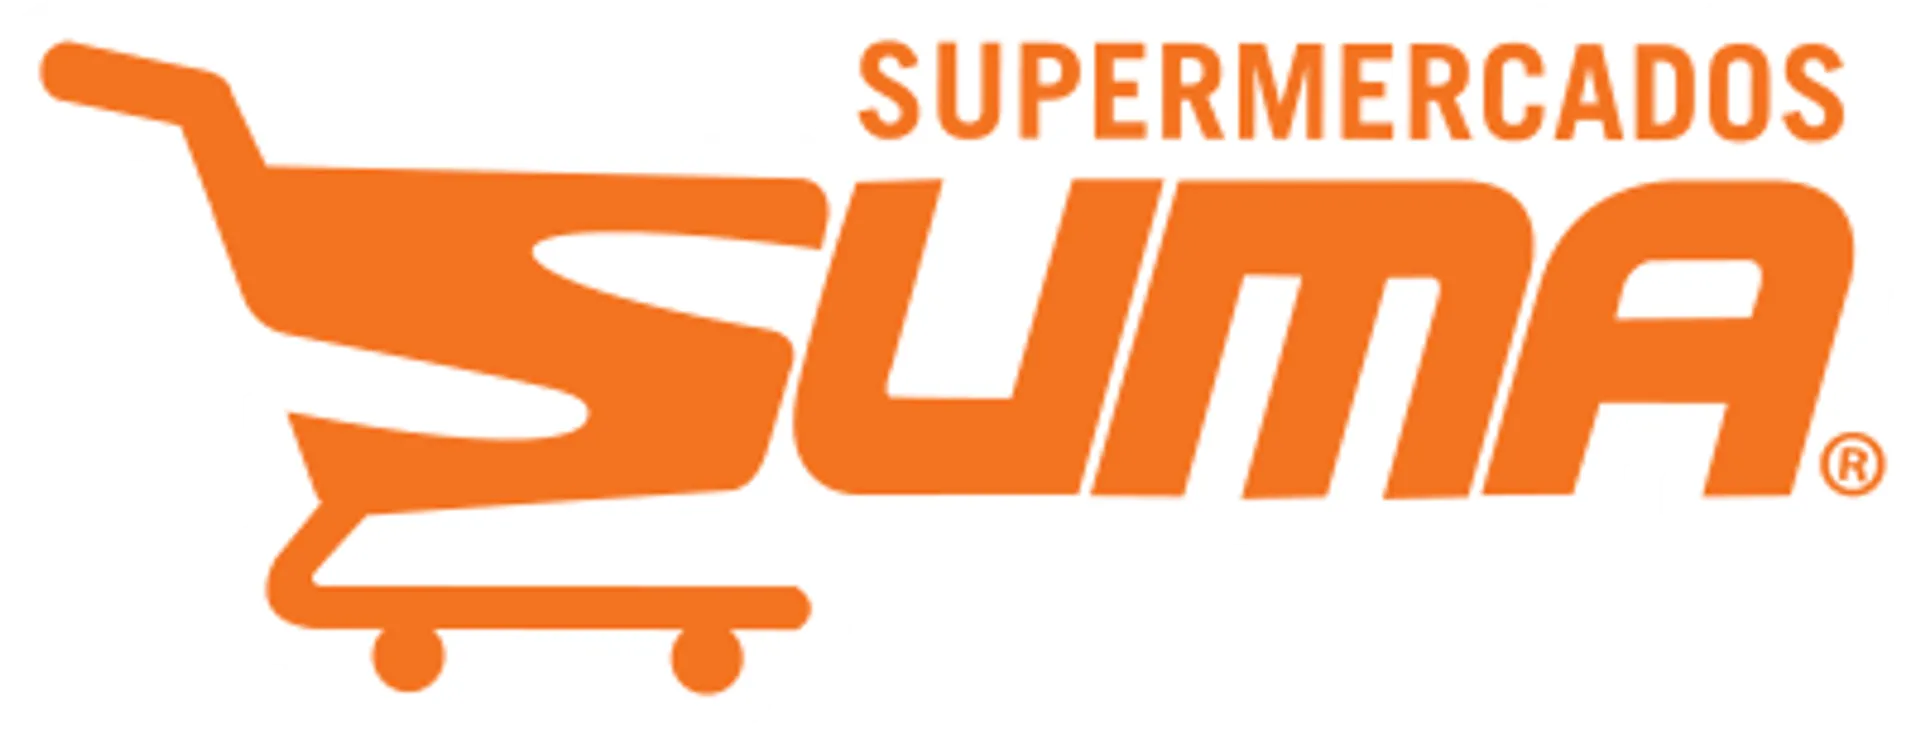 SUMA SUPERMERCADOS logo de catálogo